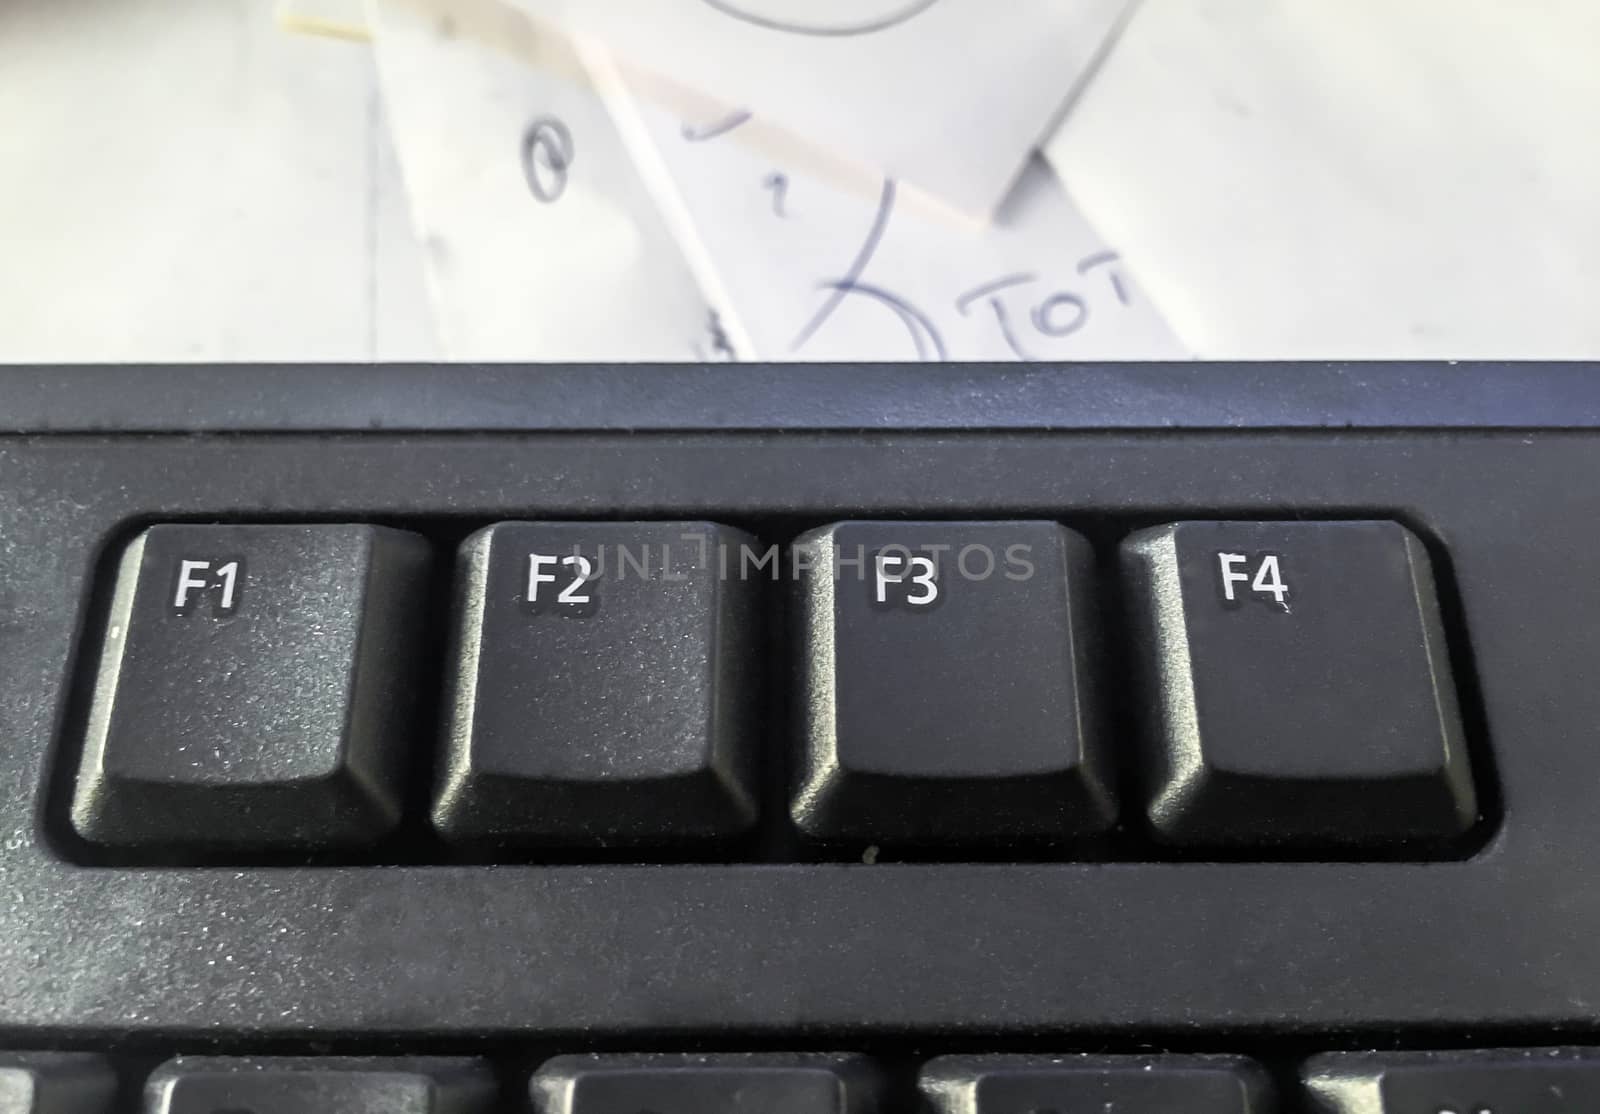 F keys of a pc keyboard by rarrarorro